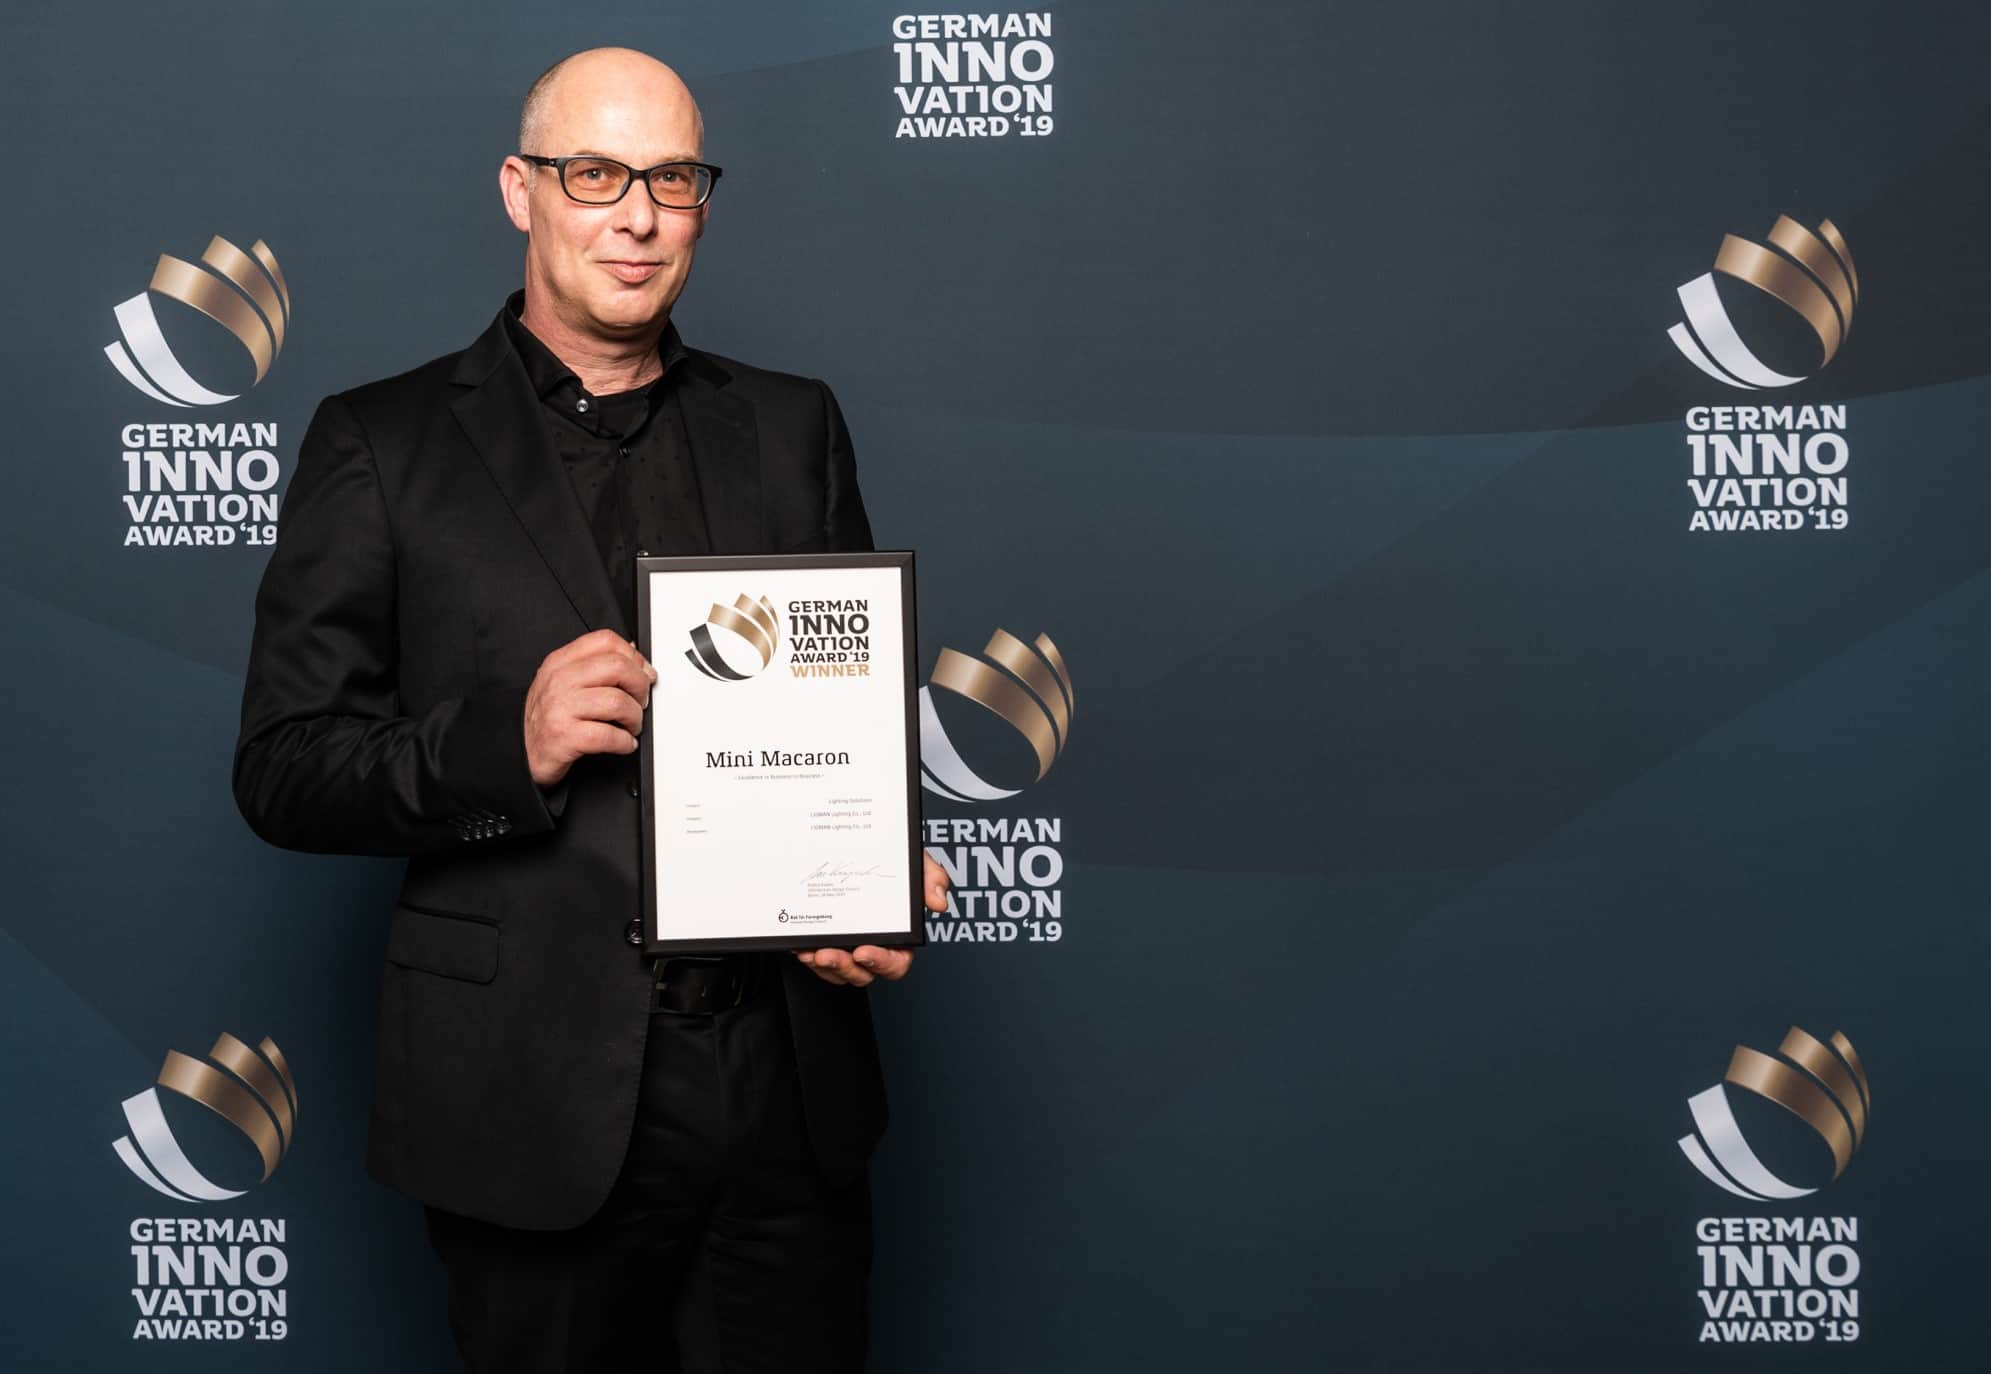 German Inno Vation Award 2019